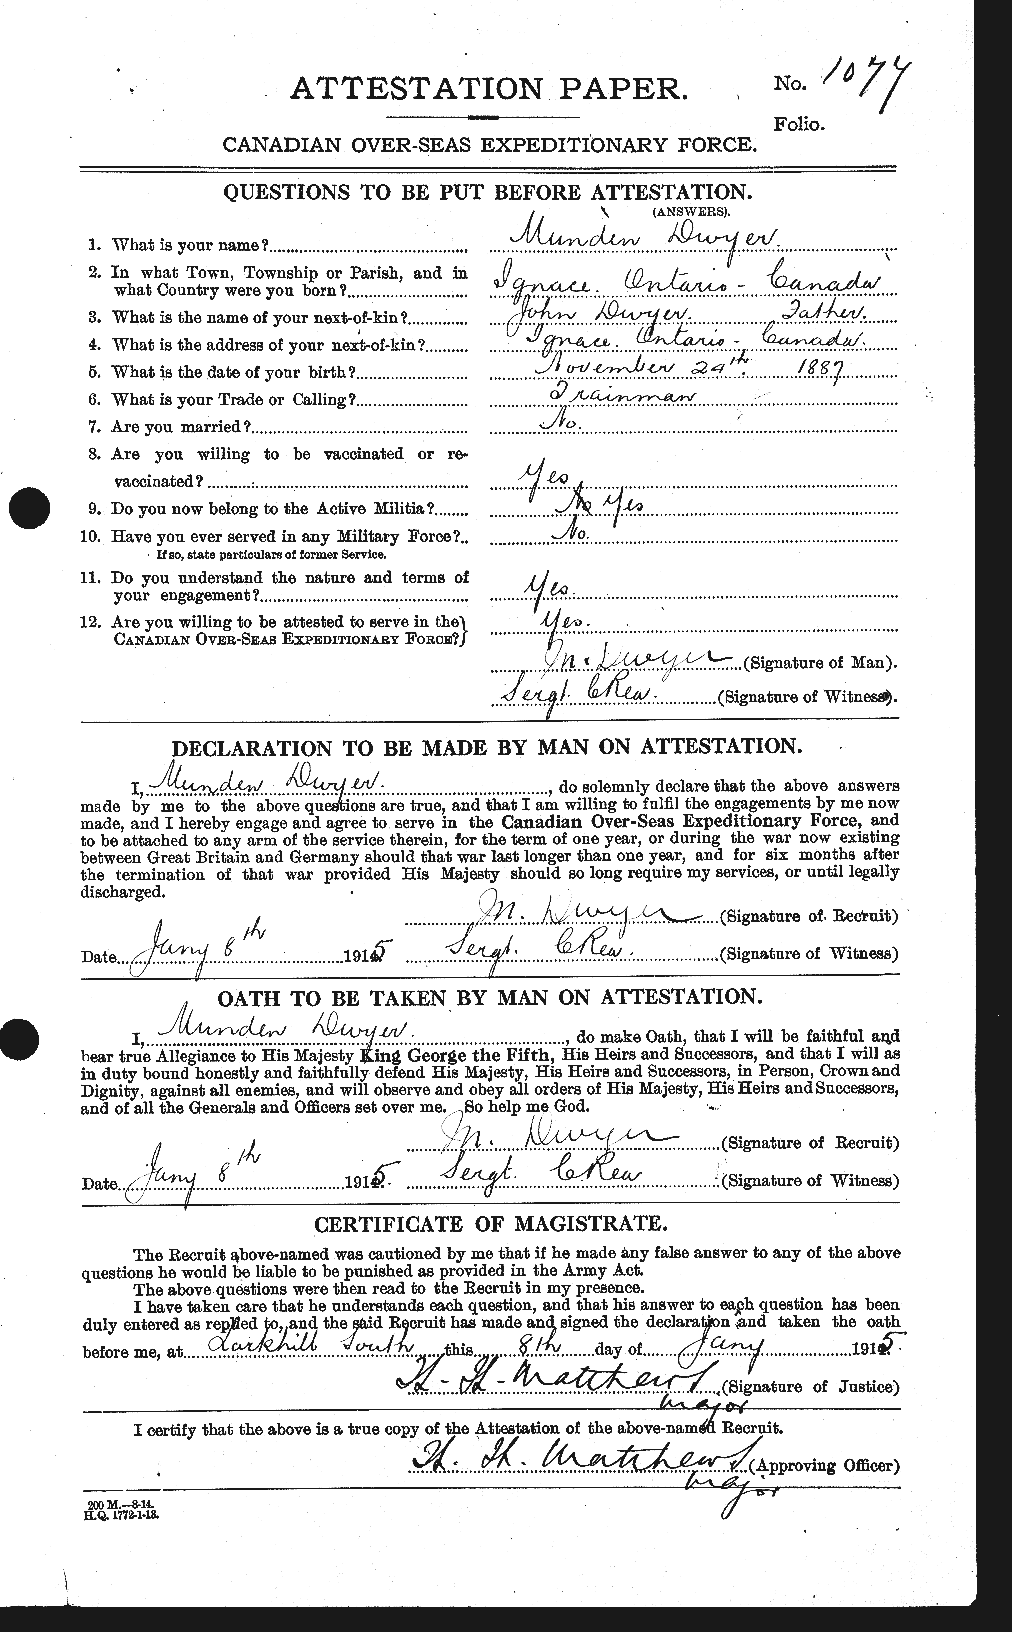 Dossiers du Personnel de la Première Guerre mondiale - CEC 305674a